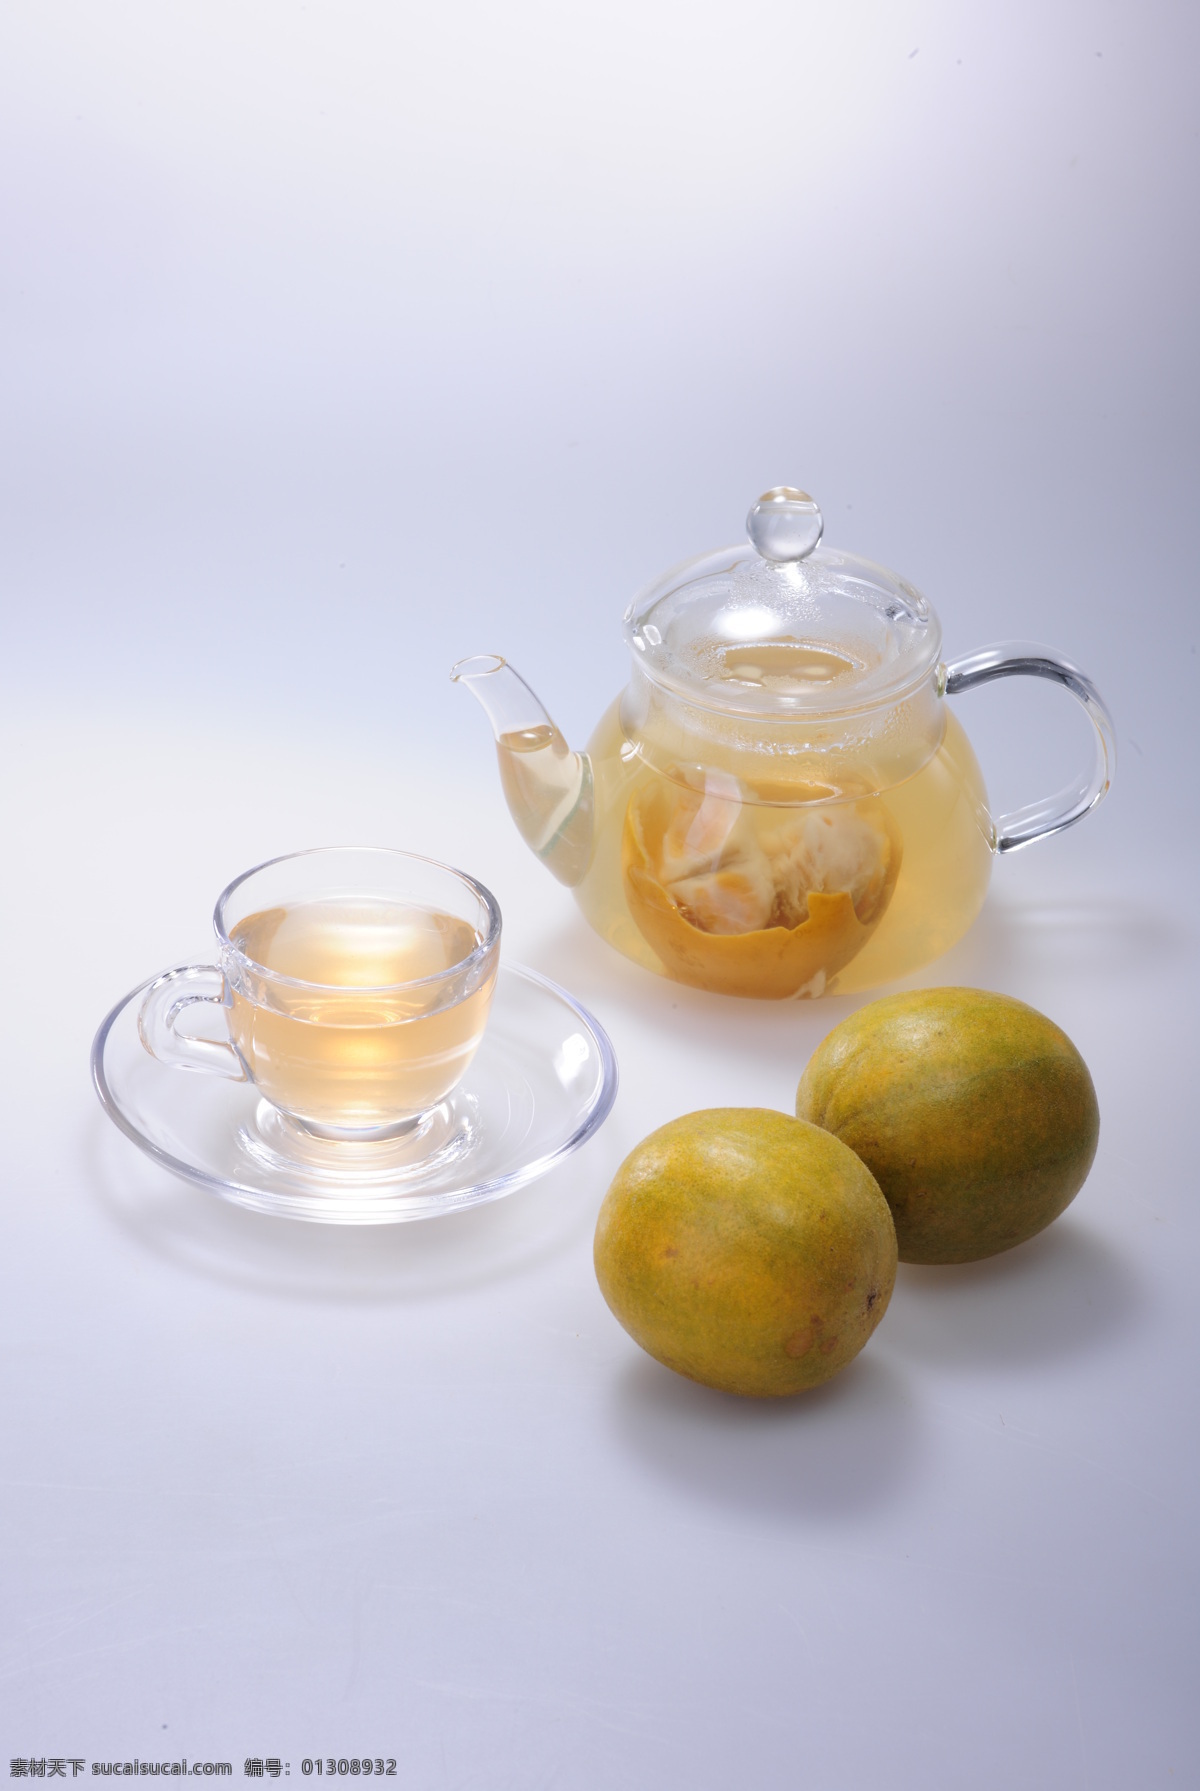 罗汉果 花茶 水果茶 一壶茶 玻璃杯 罗汉果茶 餐饮美食 饮料酒水